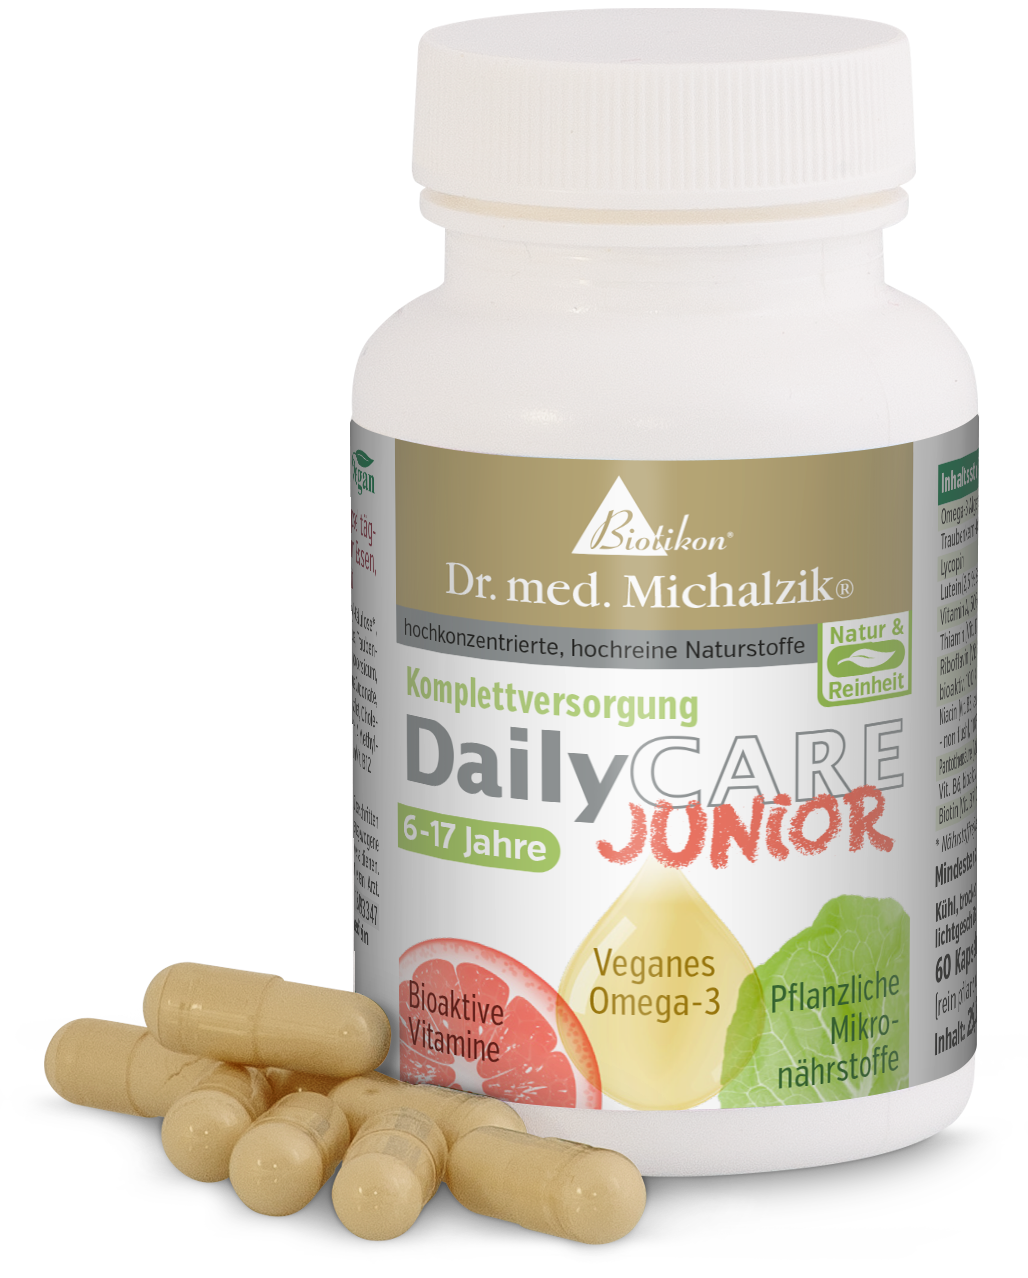 DailyCare Junior - Bioaktive Vitamine, veganes Omega-3 + Spurenelemente und hochwertige Pflanzenstoffe